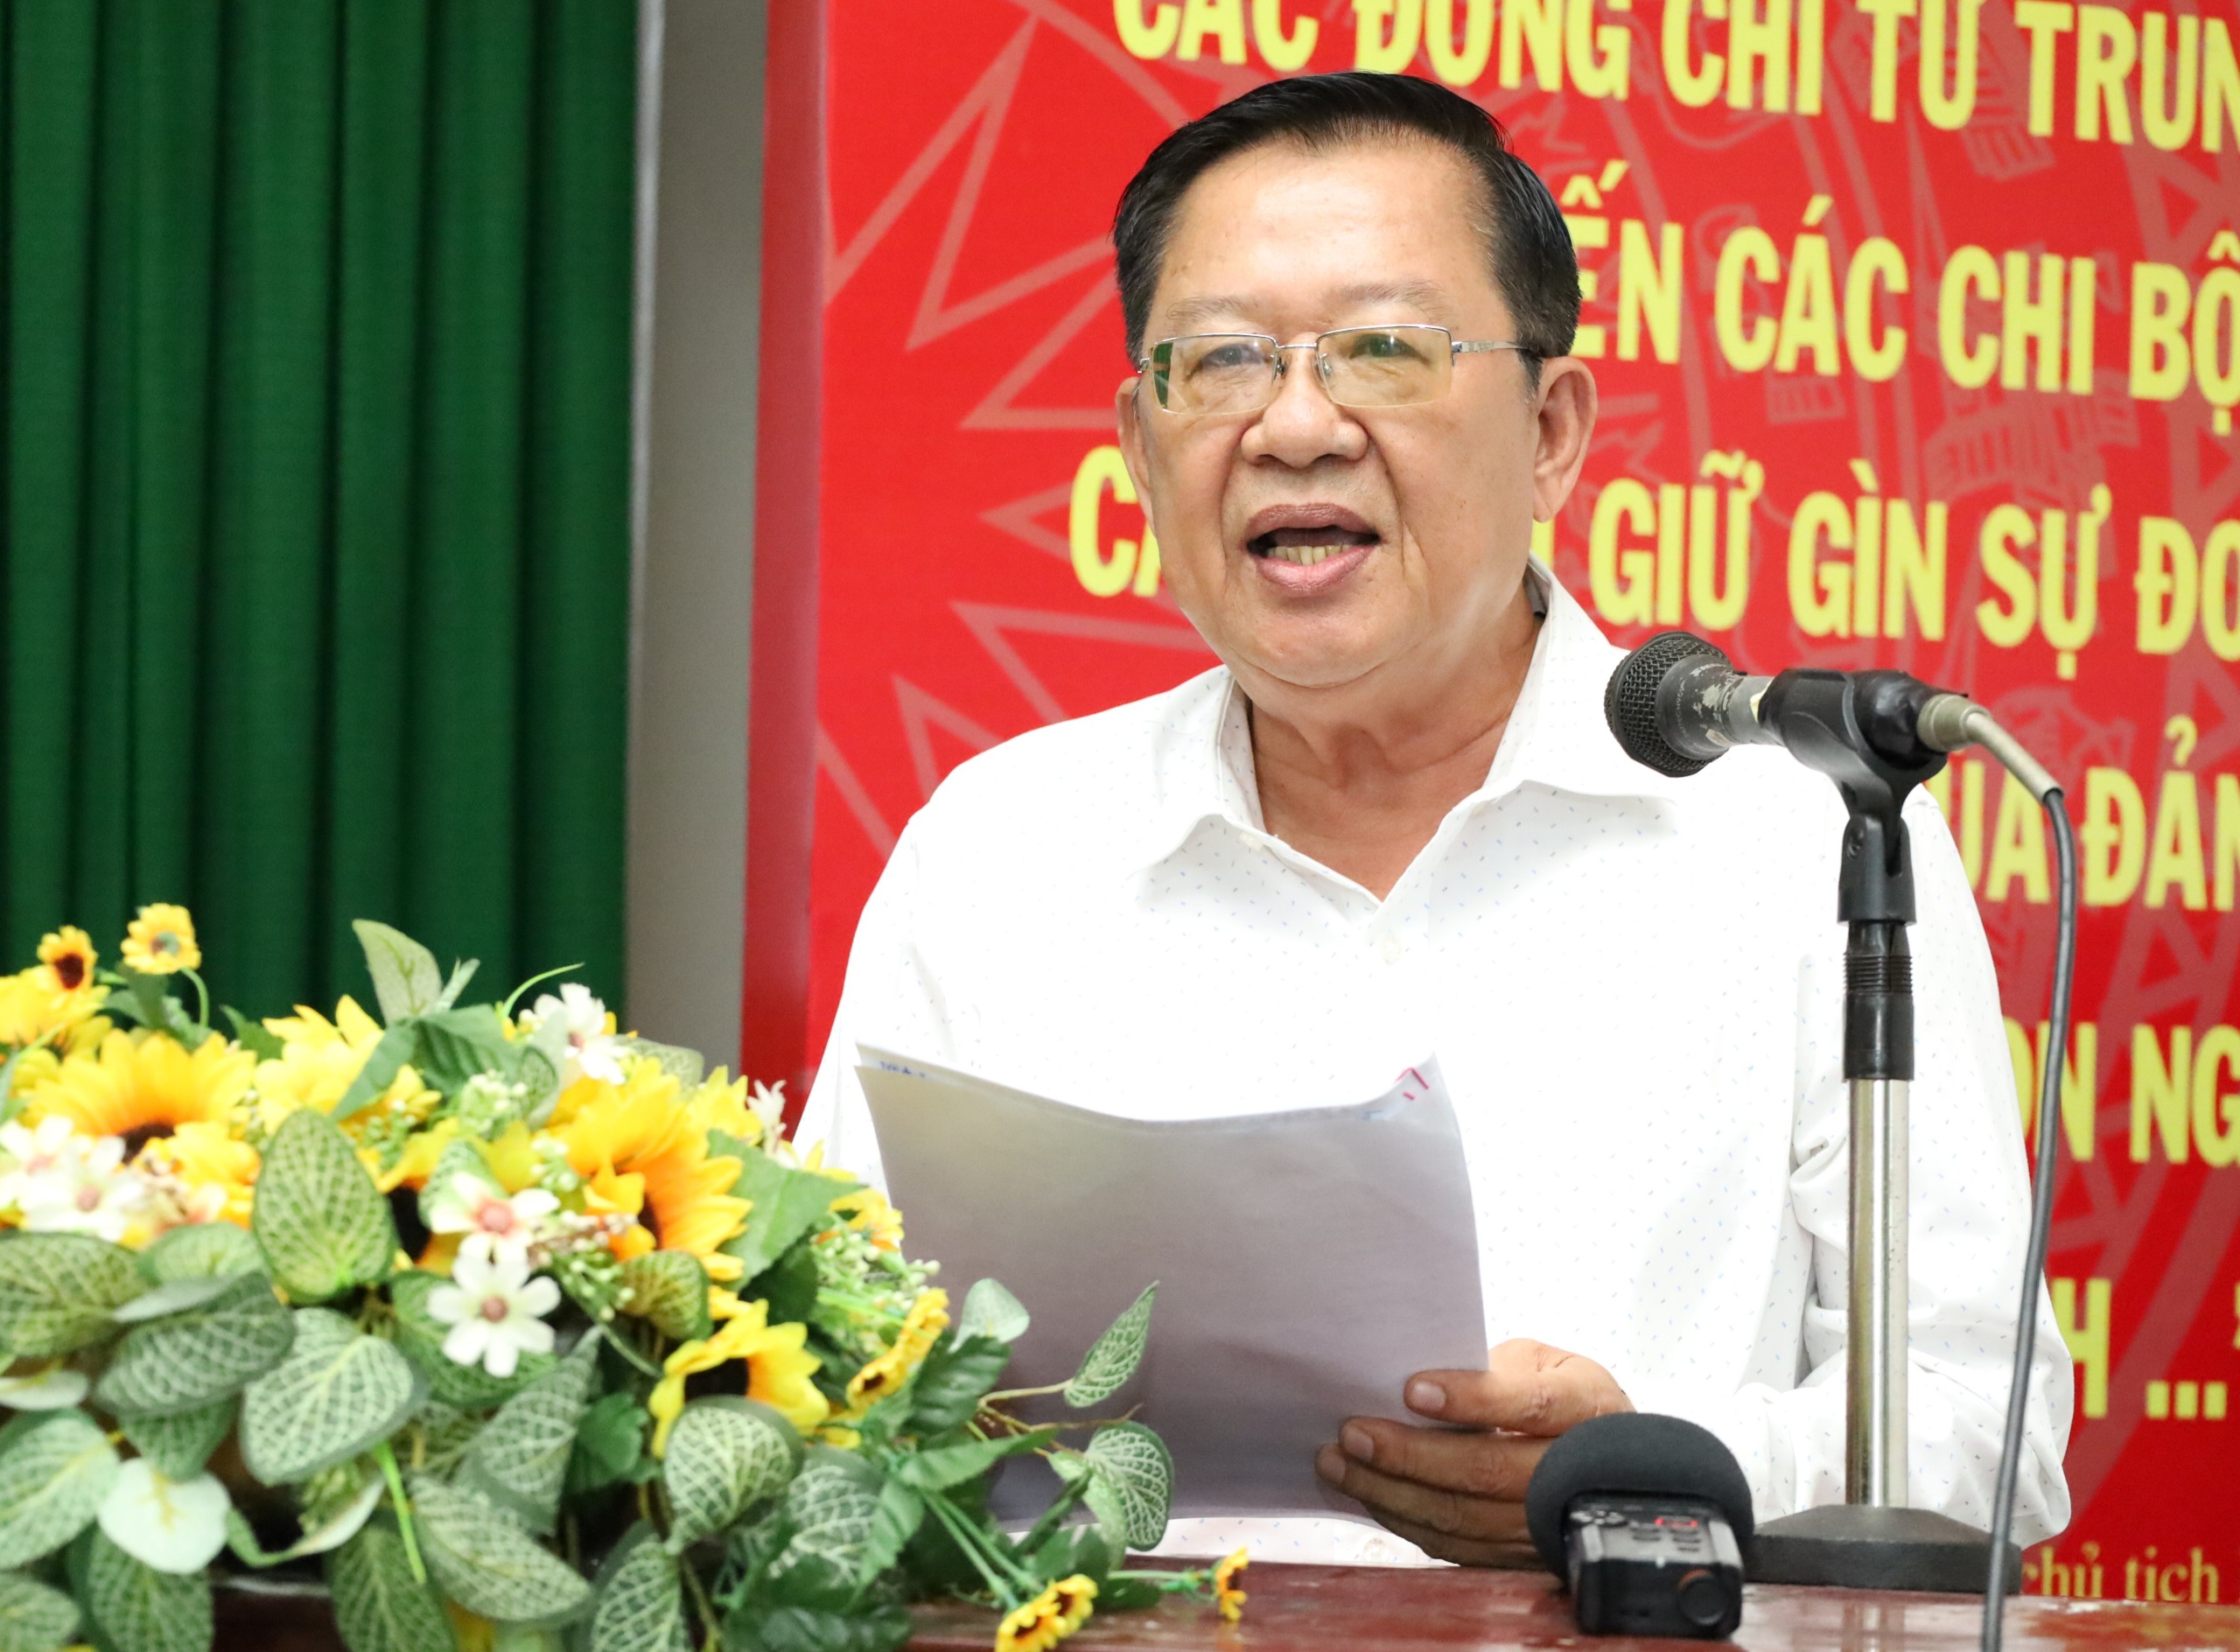 Ông Trần Việt Phường - Chủ tịch Hiệp hội du lịch Đồng bằng sông Cửu Long phát biểu tại hội nghị sơ kết 6 tháng đầu năm của Cụm hợp tác, liên kết phát triển du lịch phía Tây ĐBSCL.